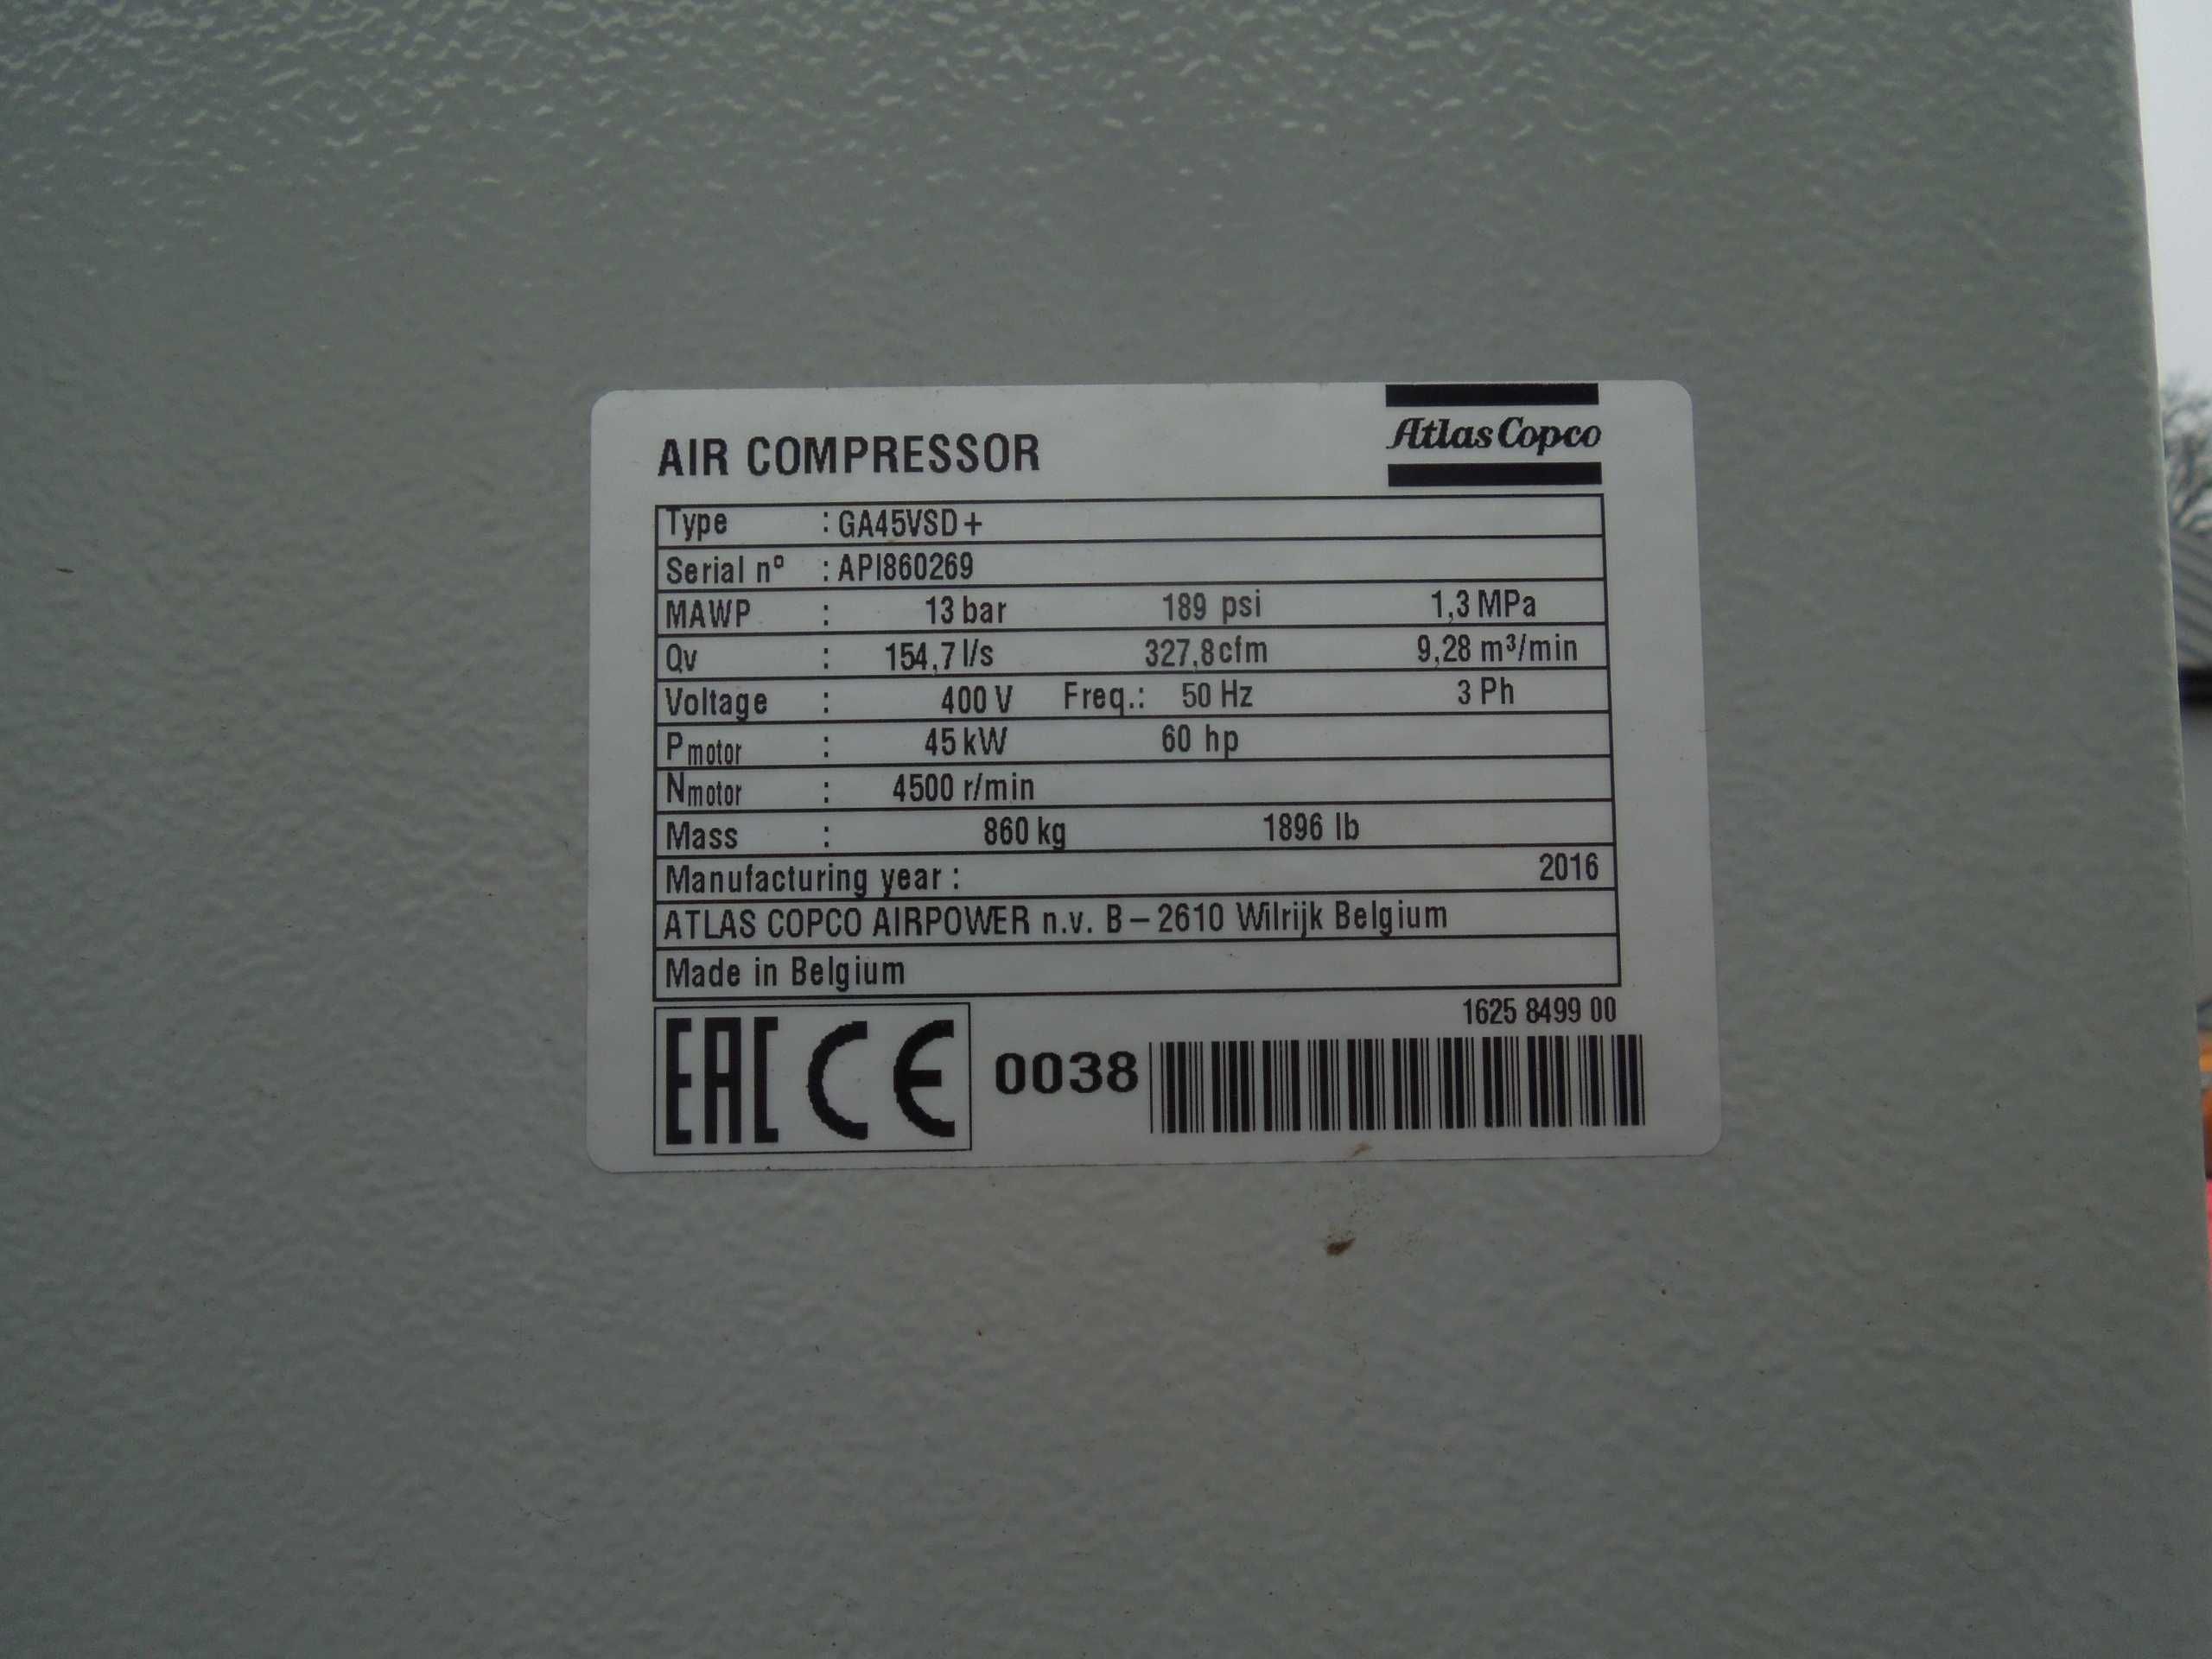 Sprężarka/Kompresor Atlas Copco GA45VSD po serwisie